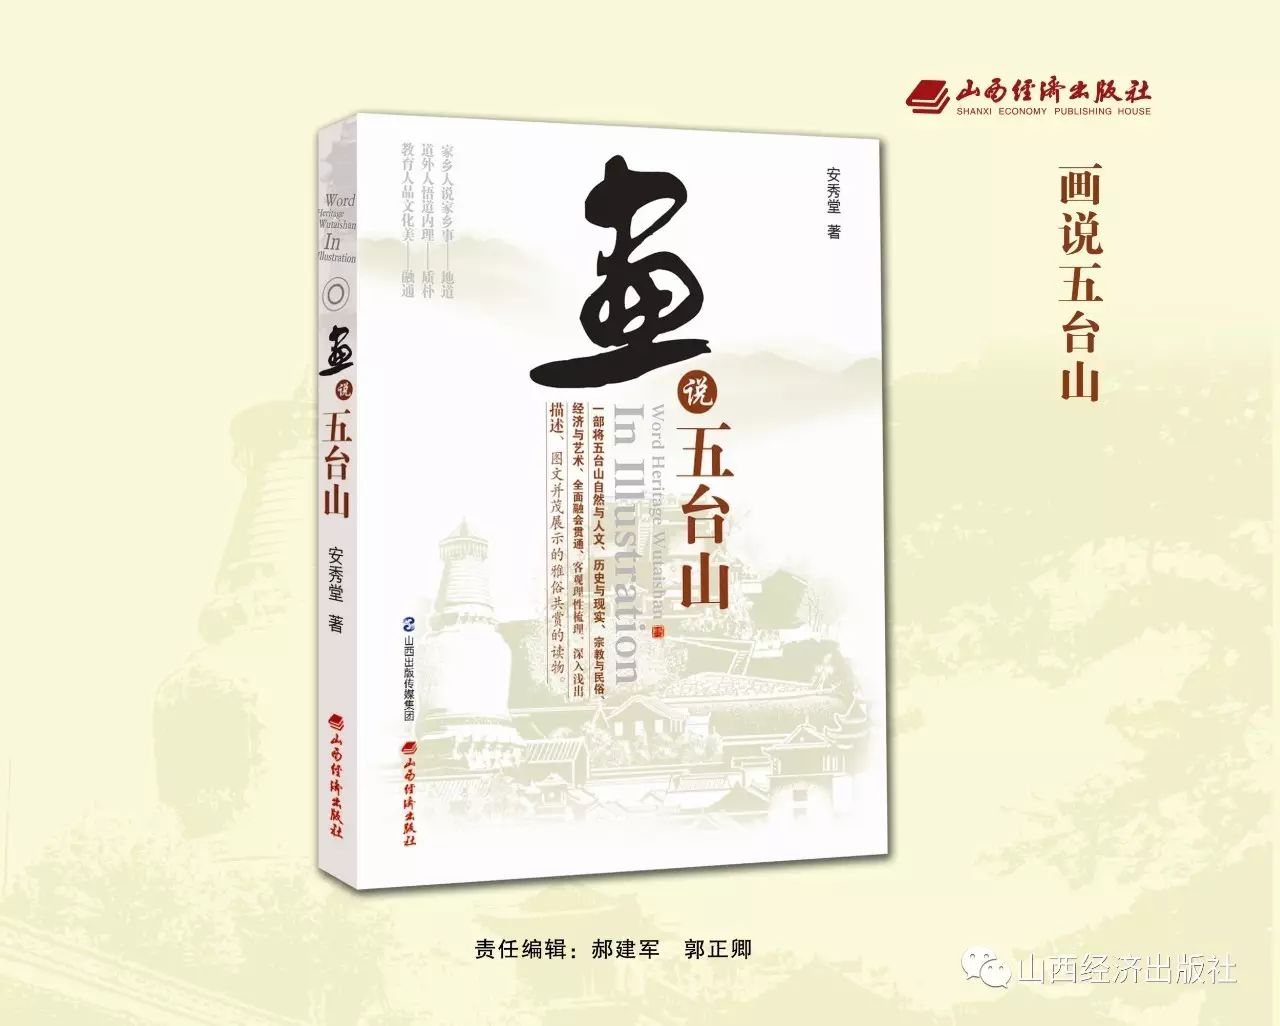 出版经济系统运行的基本原理_山西经济出版社_明河社2012年出版